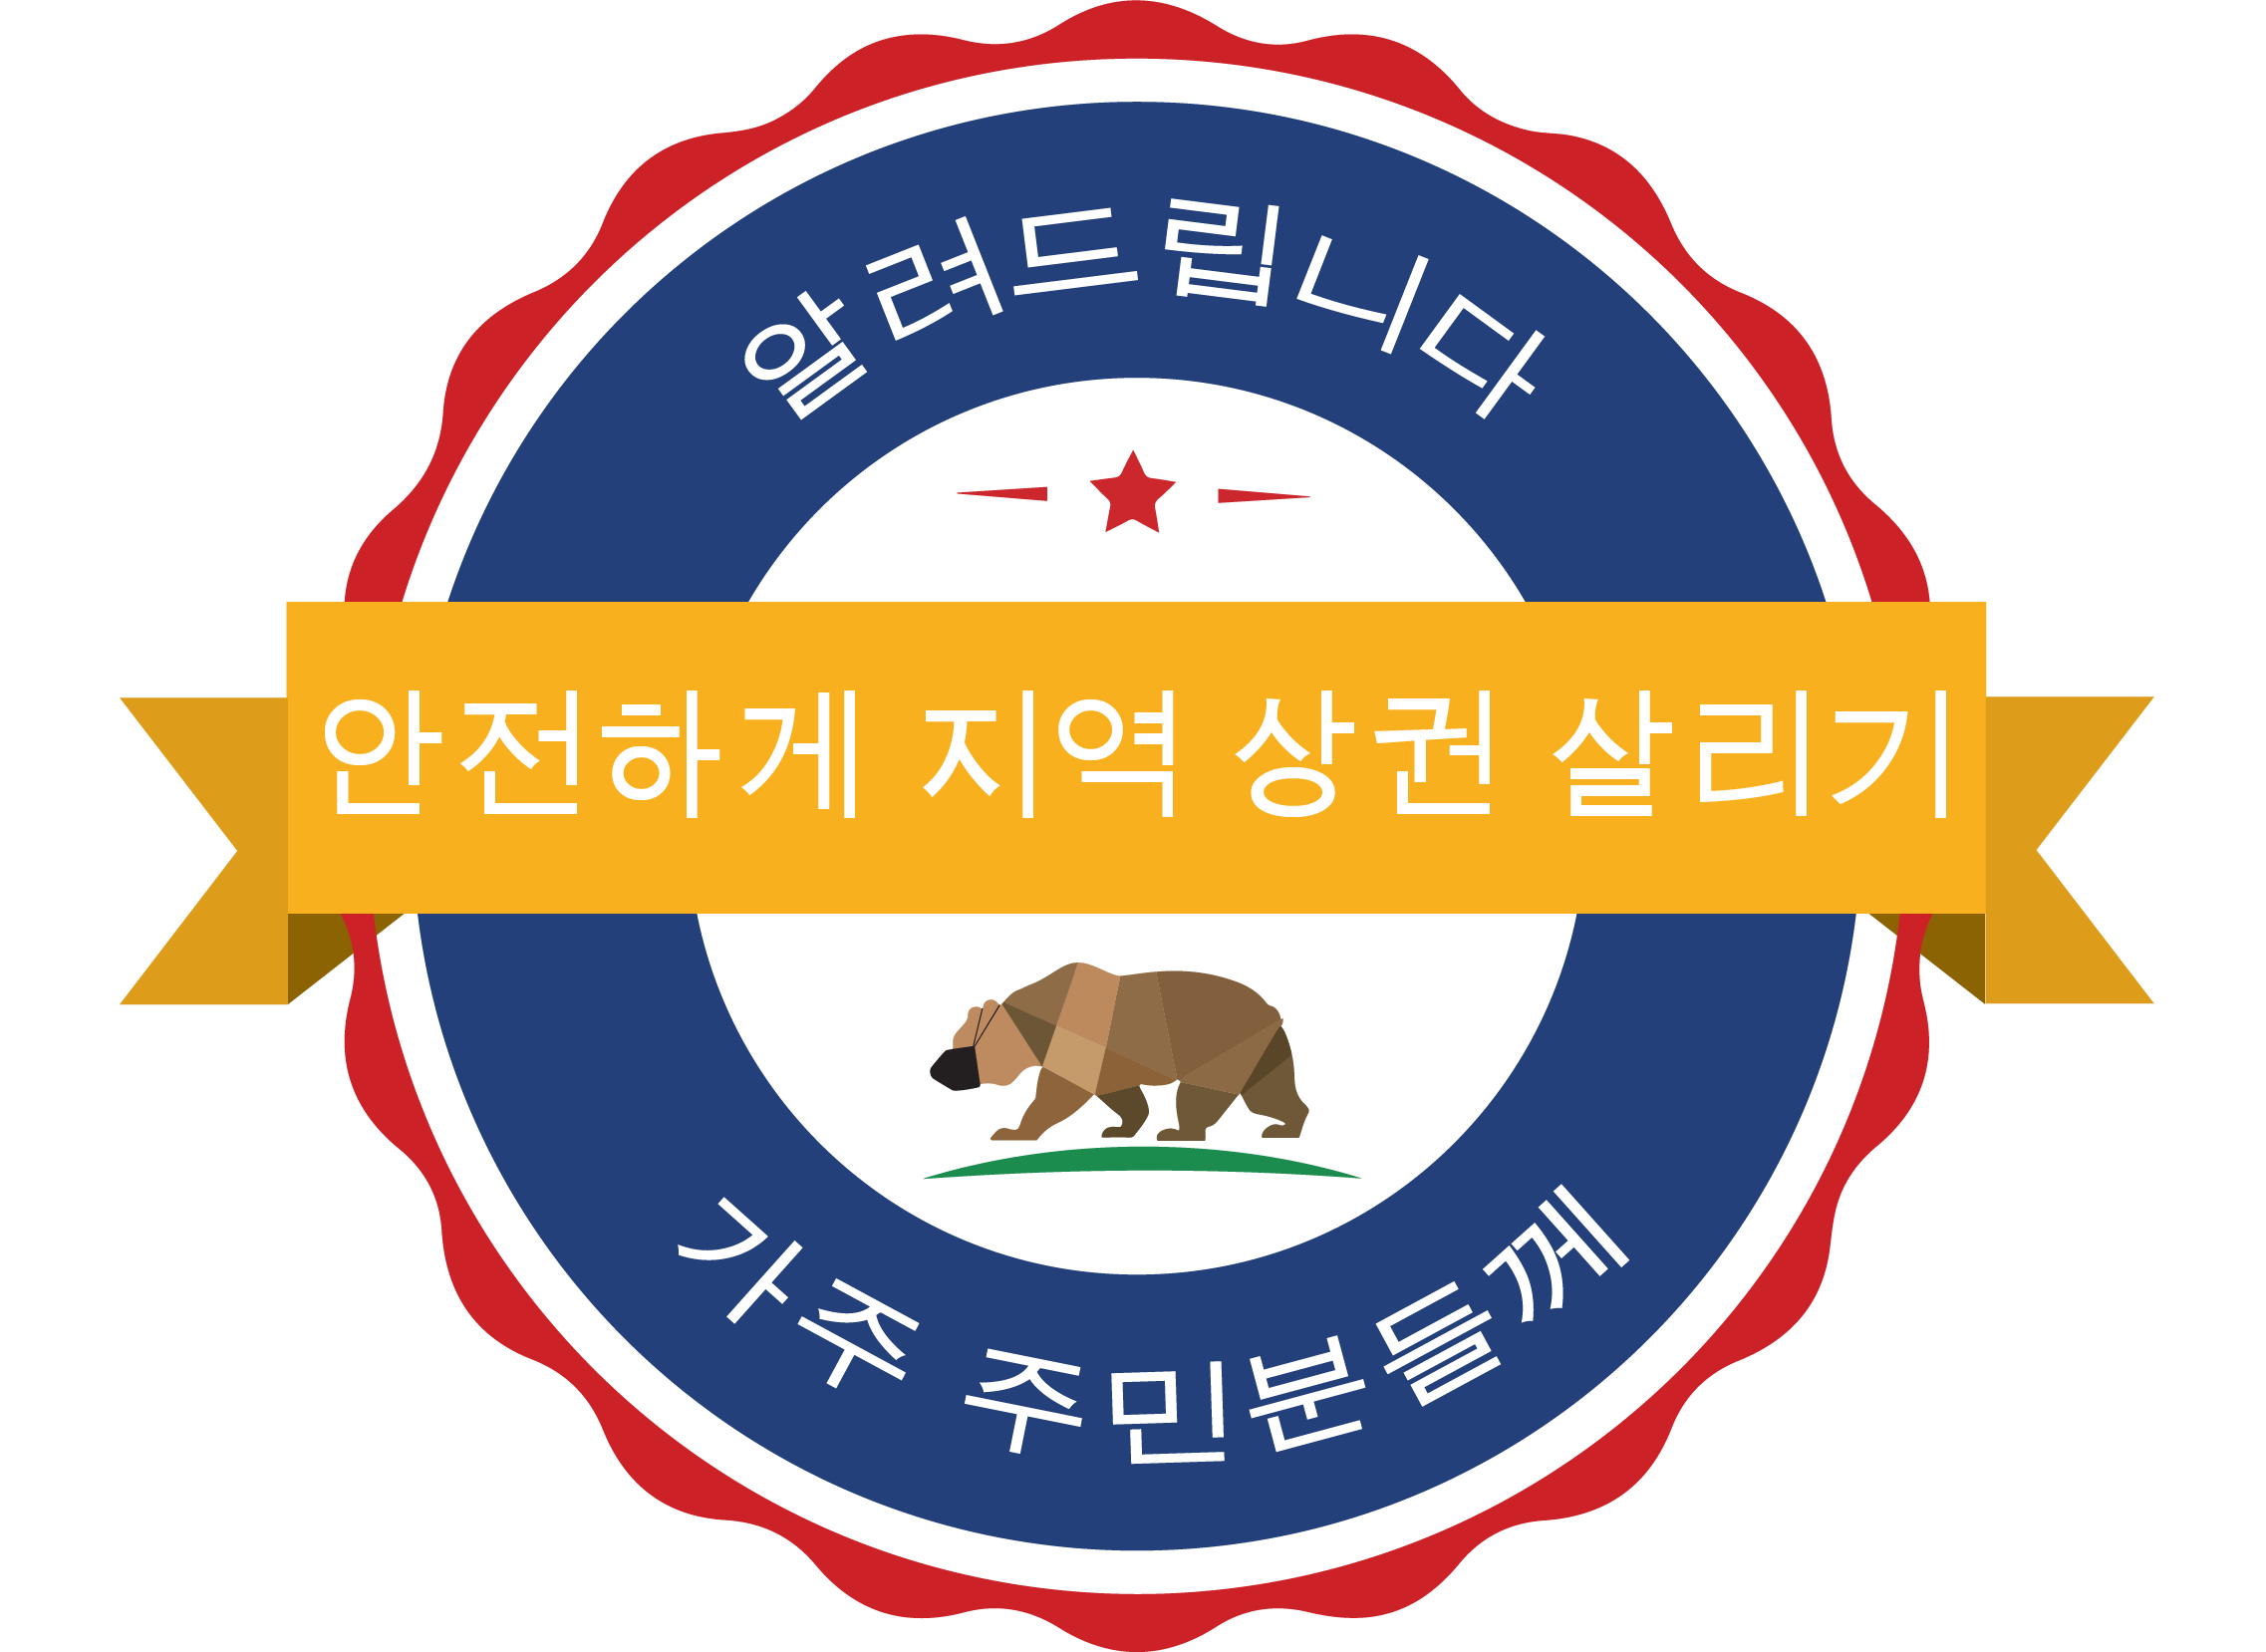 ShopSafeShopLocal Korean Logo